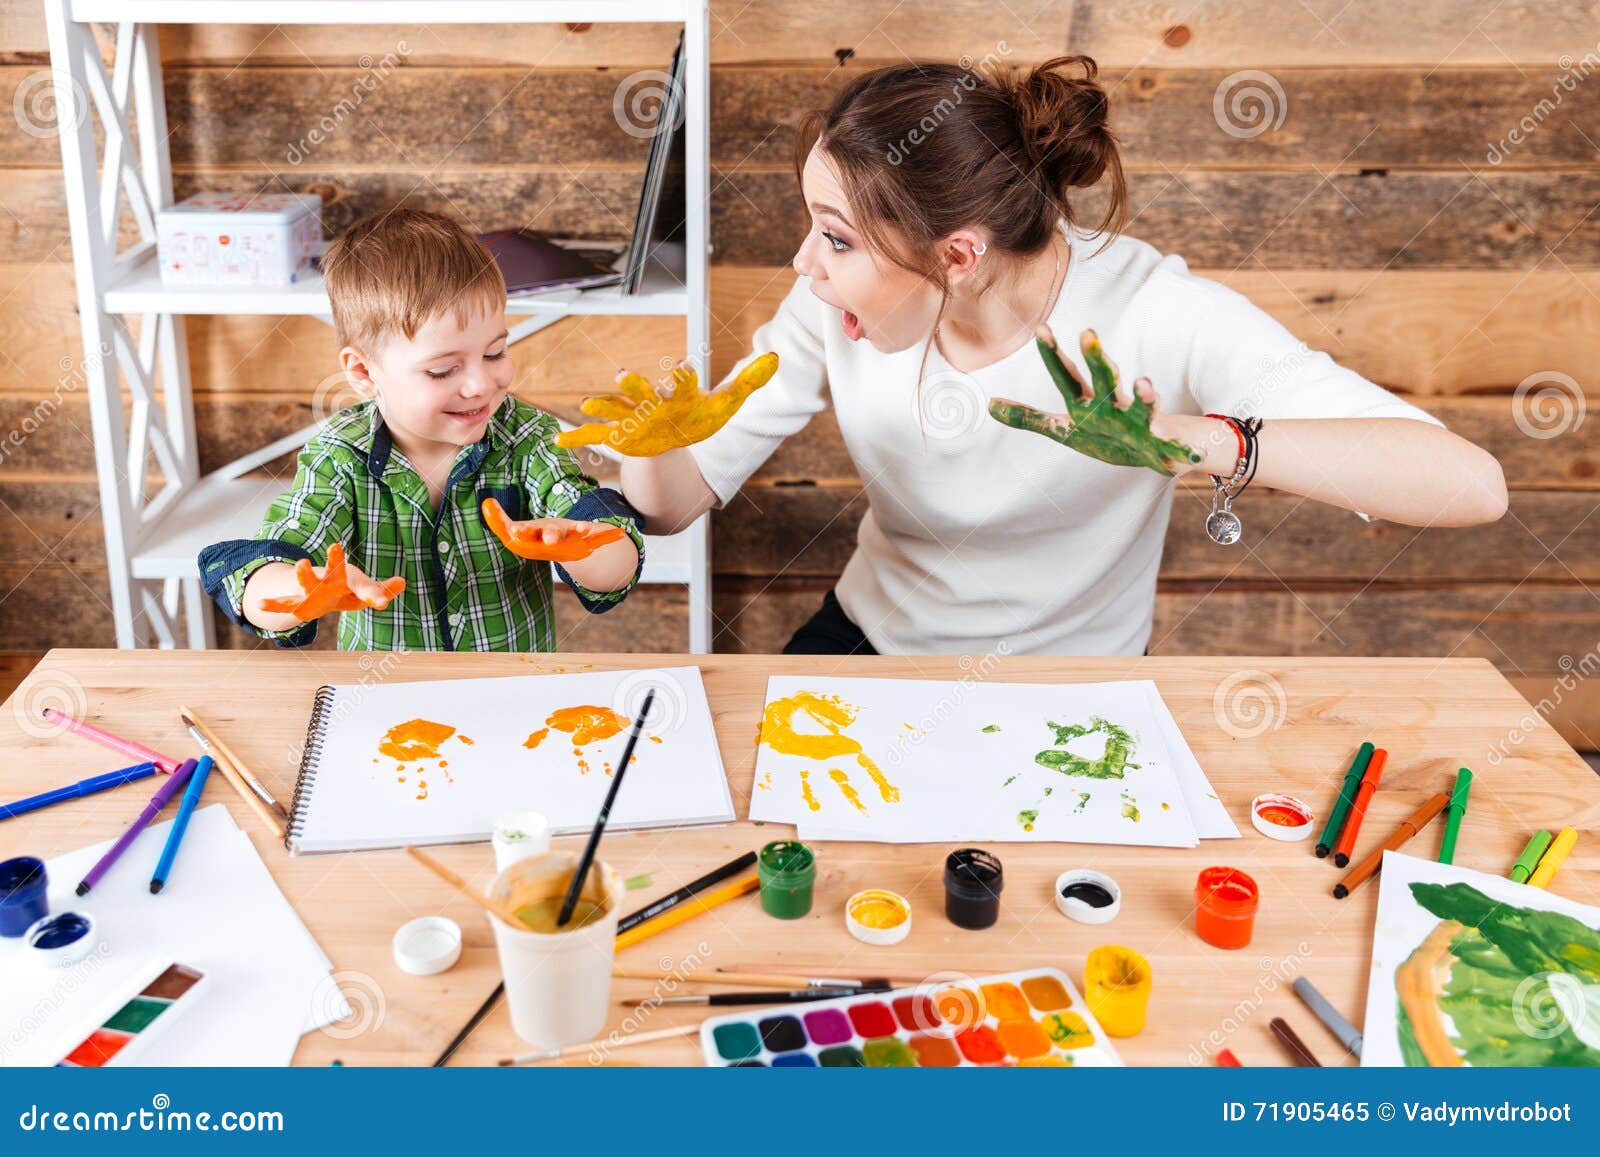 Чем заняться дома семьей. Рисование для детей. Занятия творчеством для детей. Занятия рисованием с детьми. Поделки для детей.